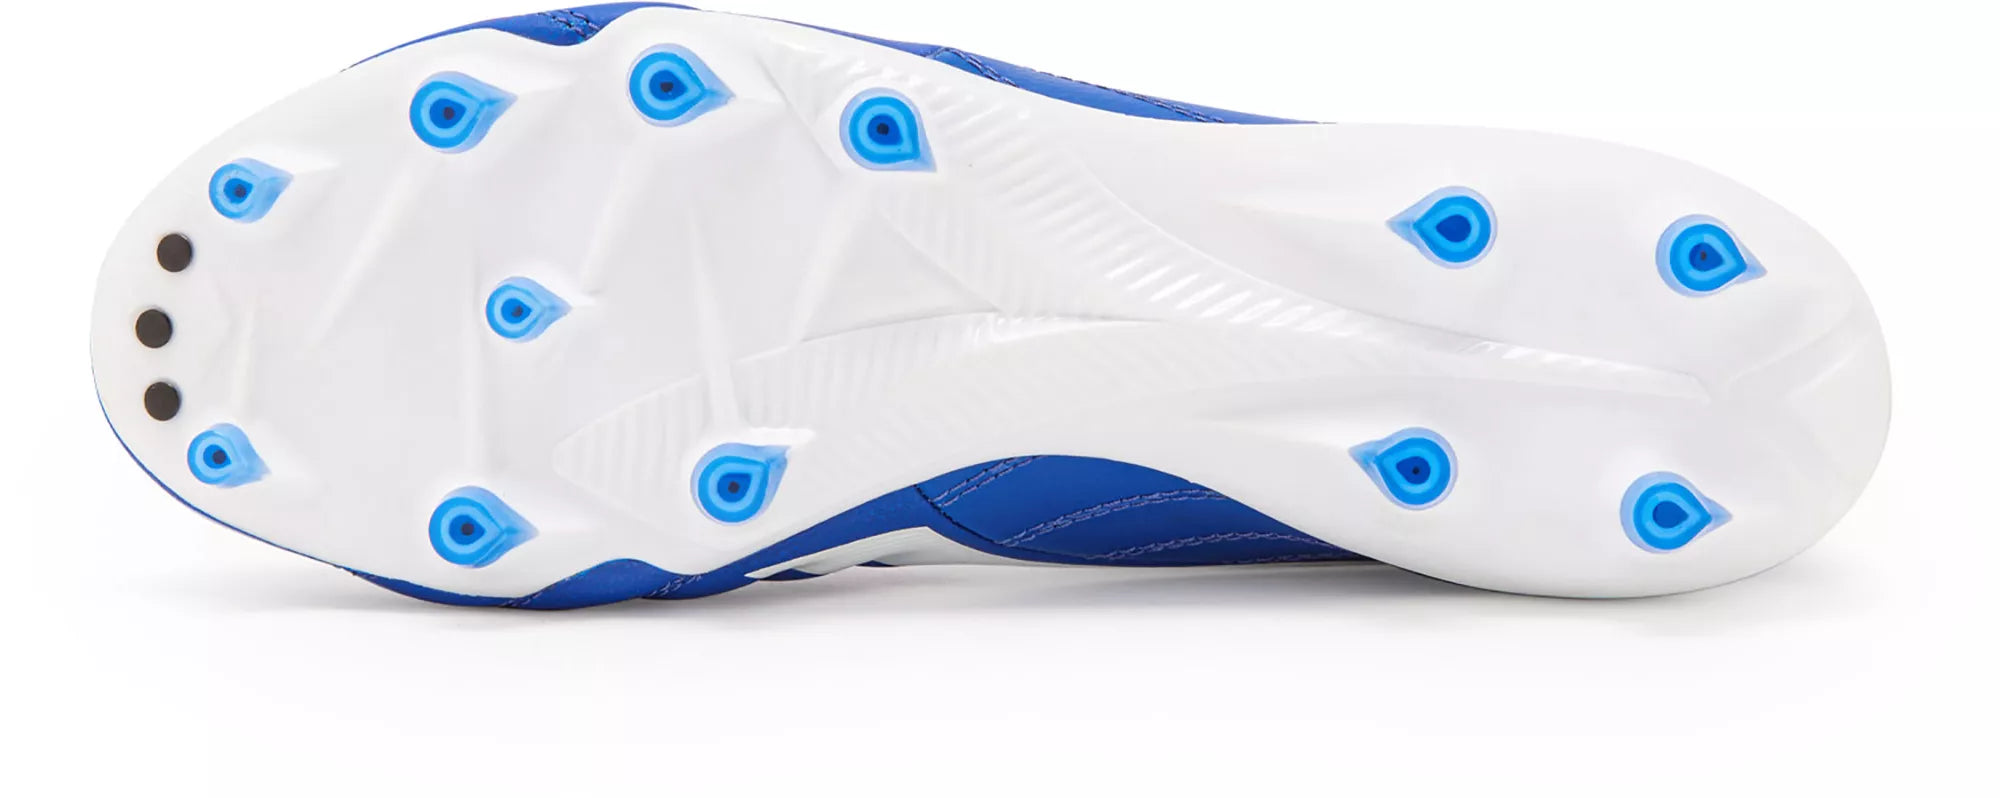 Diadora Brasil Elite 2 Tech ITA LPX FG Firm Ground Football Boots Blue/White